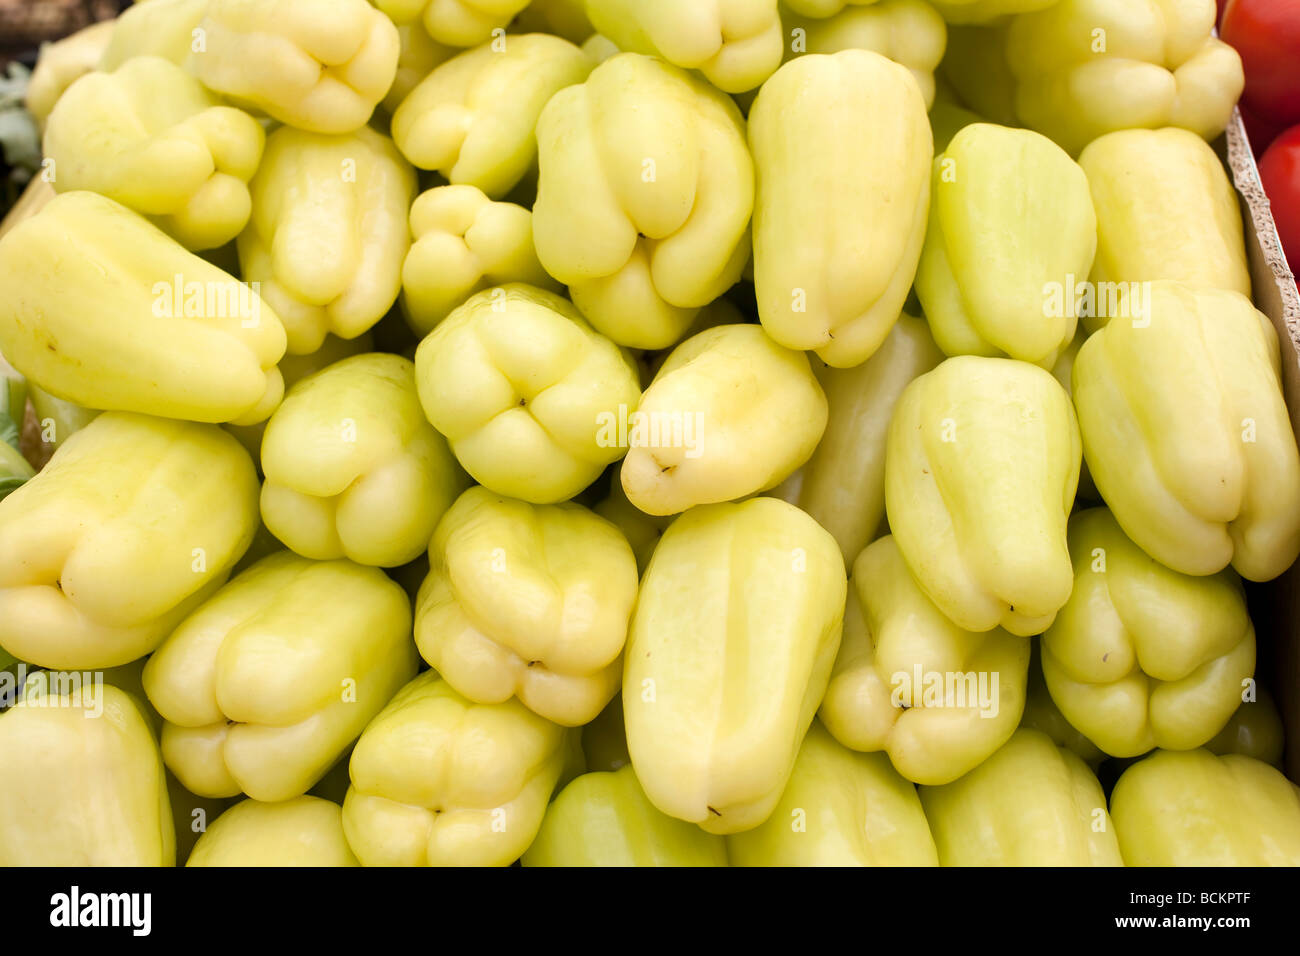 Les légumes cultivés naturellement vendus sur le marché le poivron jaune Banque D'Images